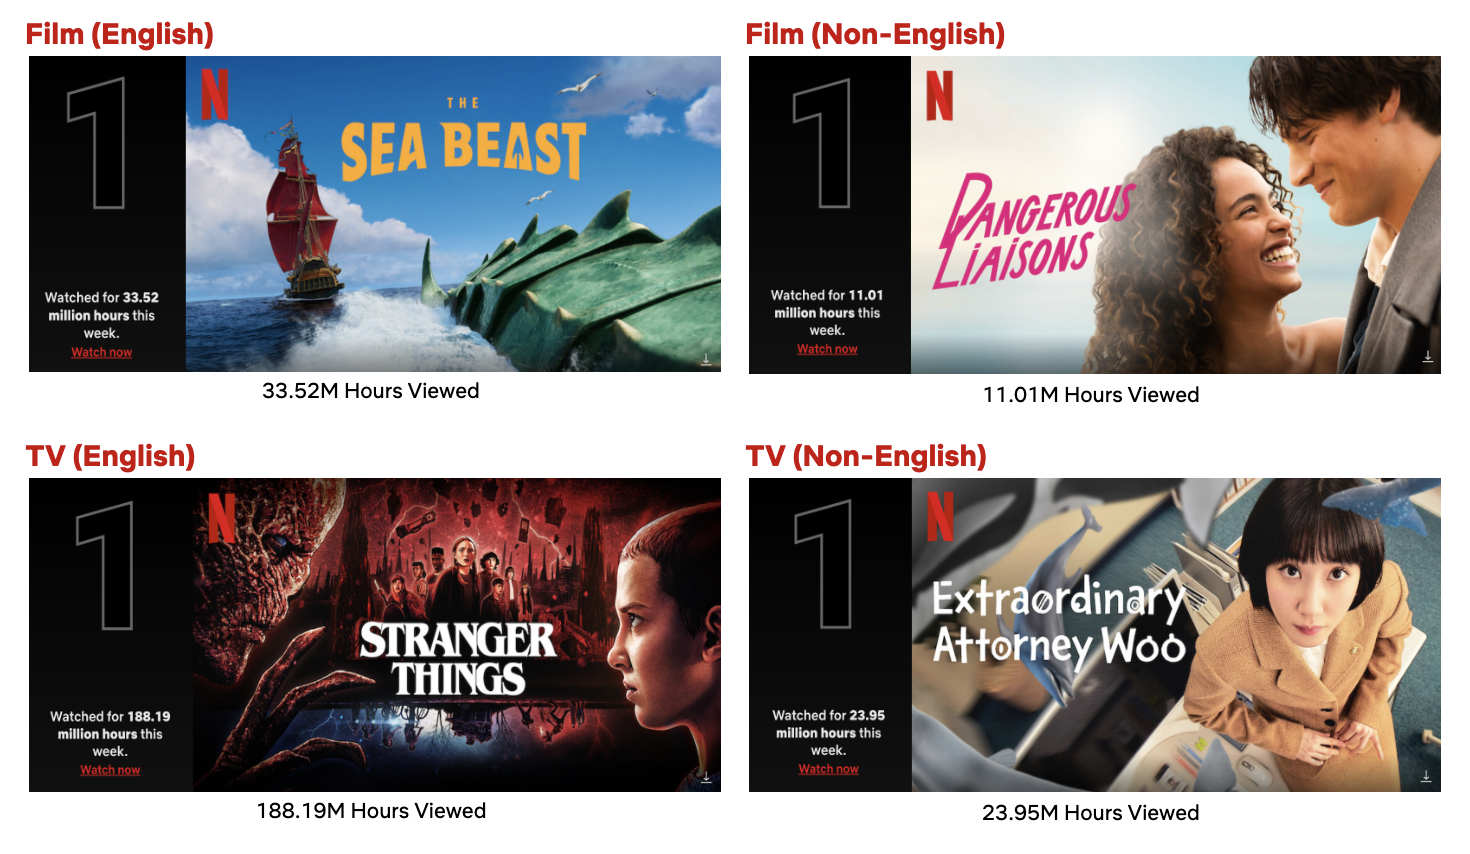 Os 28 Melhores Filmes de Mistério da Netflix - Página 1 - Cinema10